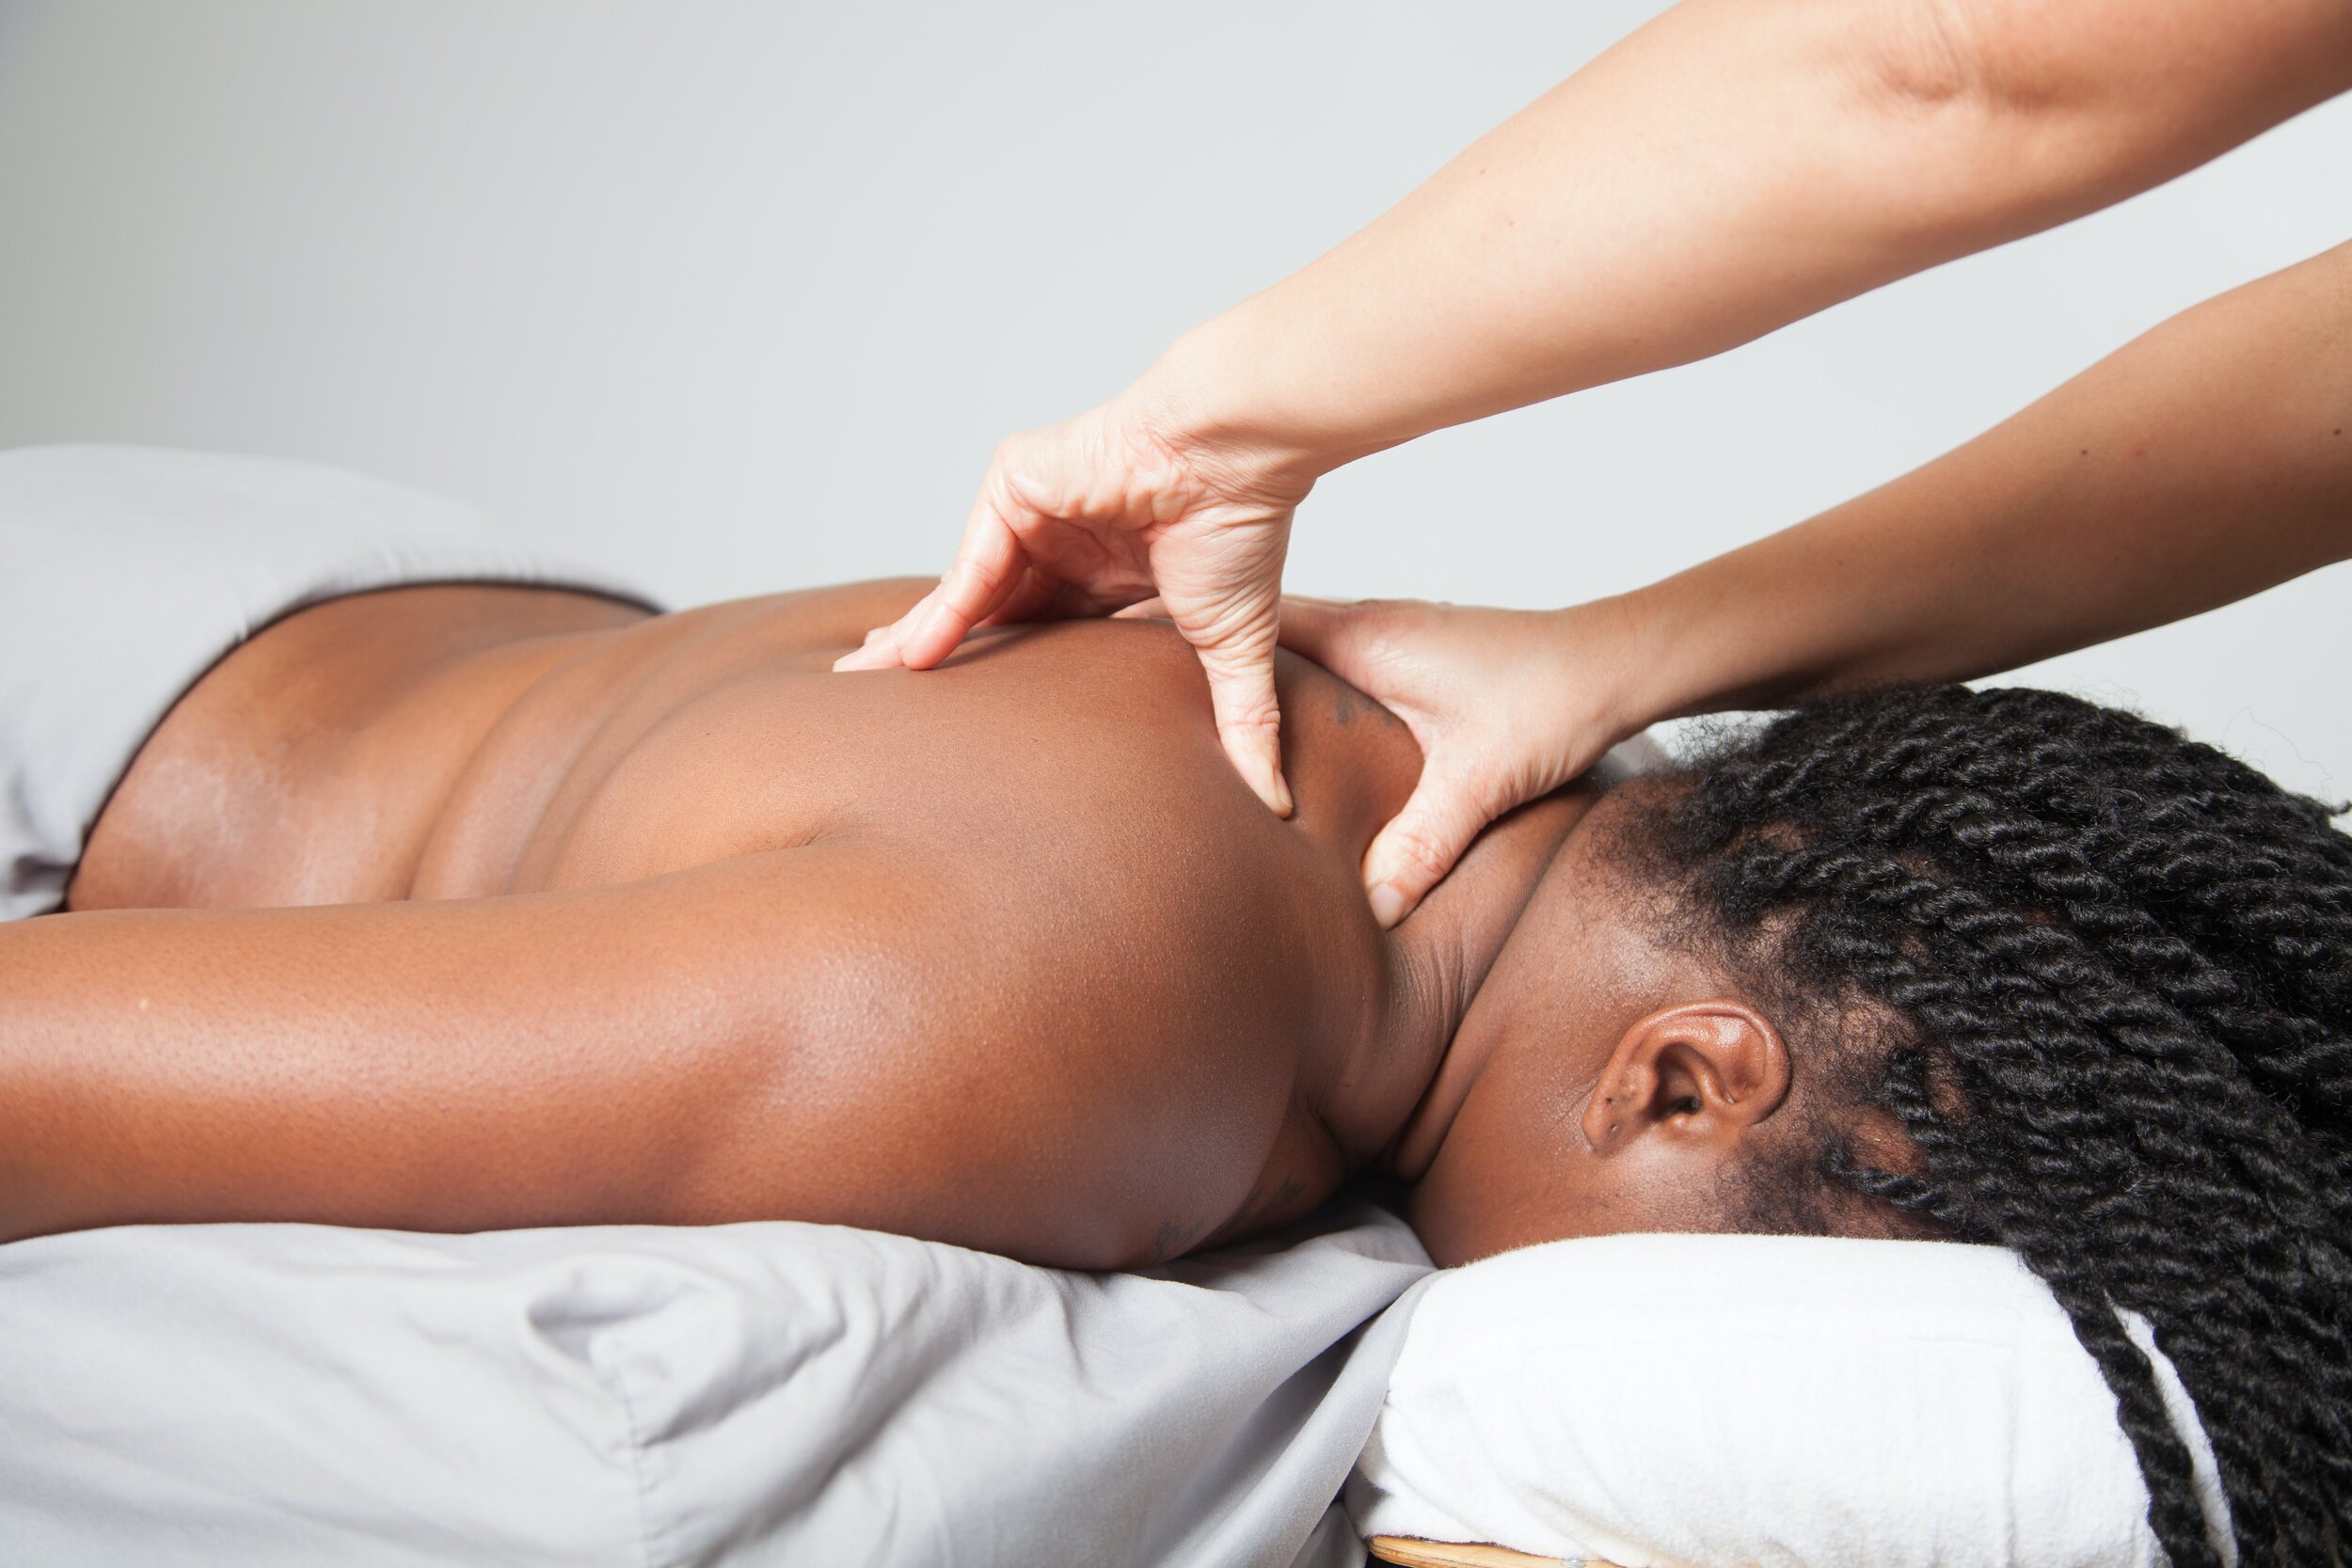 Fusion Day Spa - Therapeutic Massage Austin